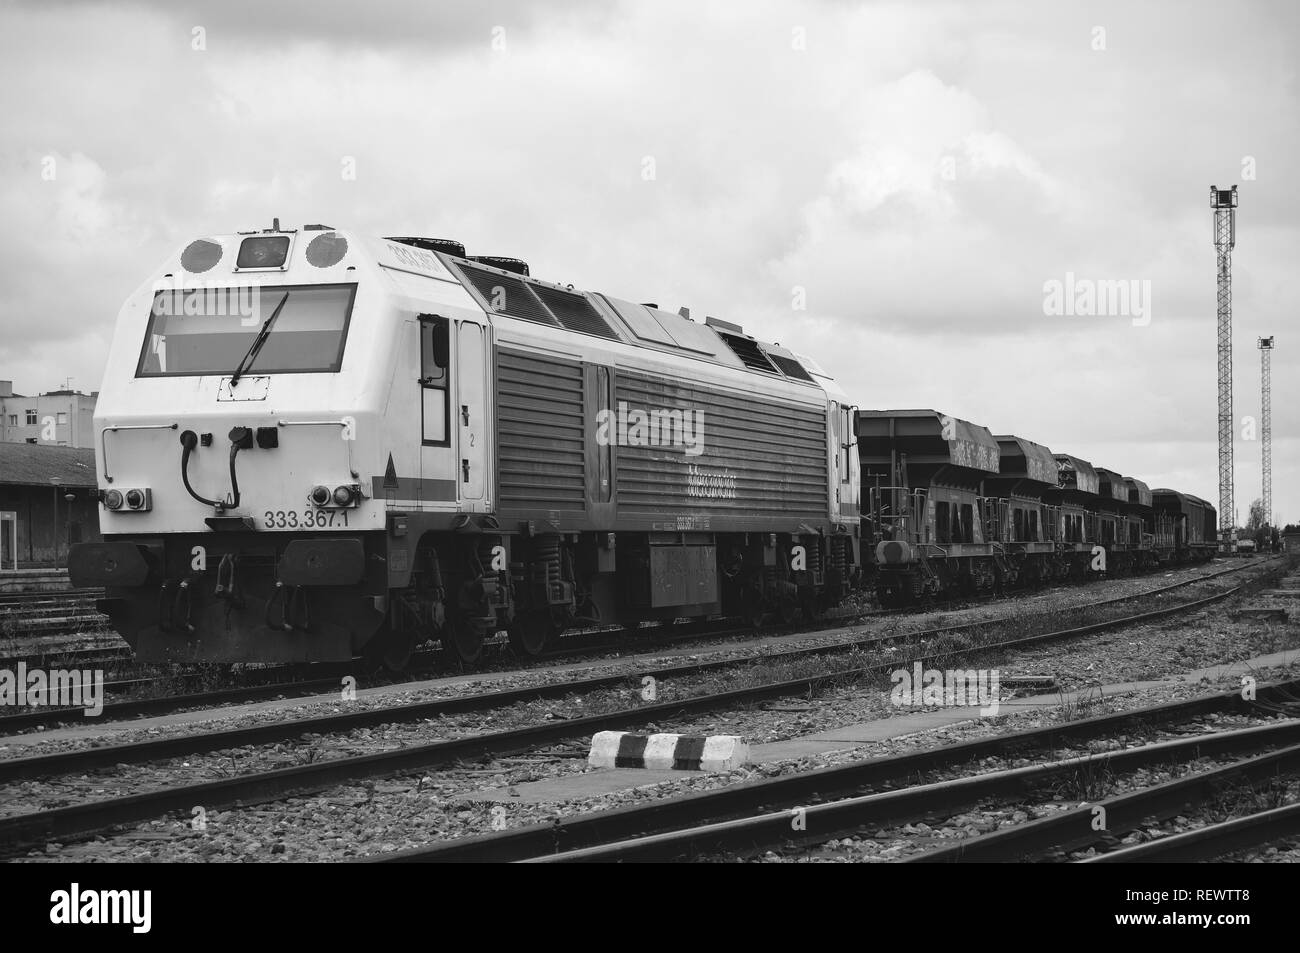 Belle vieille spanish train stationné à la gare. L'échelle de gris shot montre une locomotive puissante endommagé avec ses wagons. L'Estrémadure. Banque D'Images